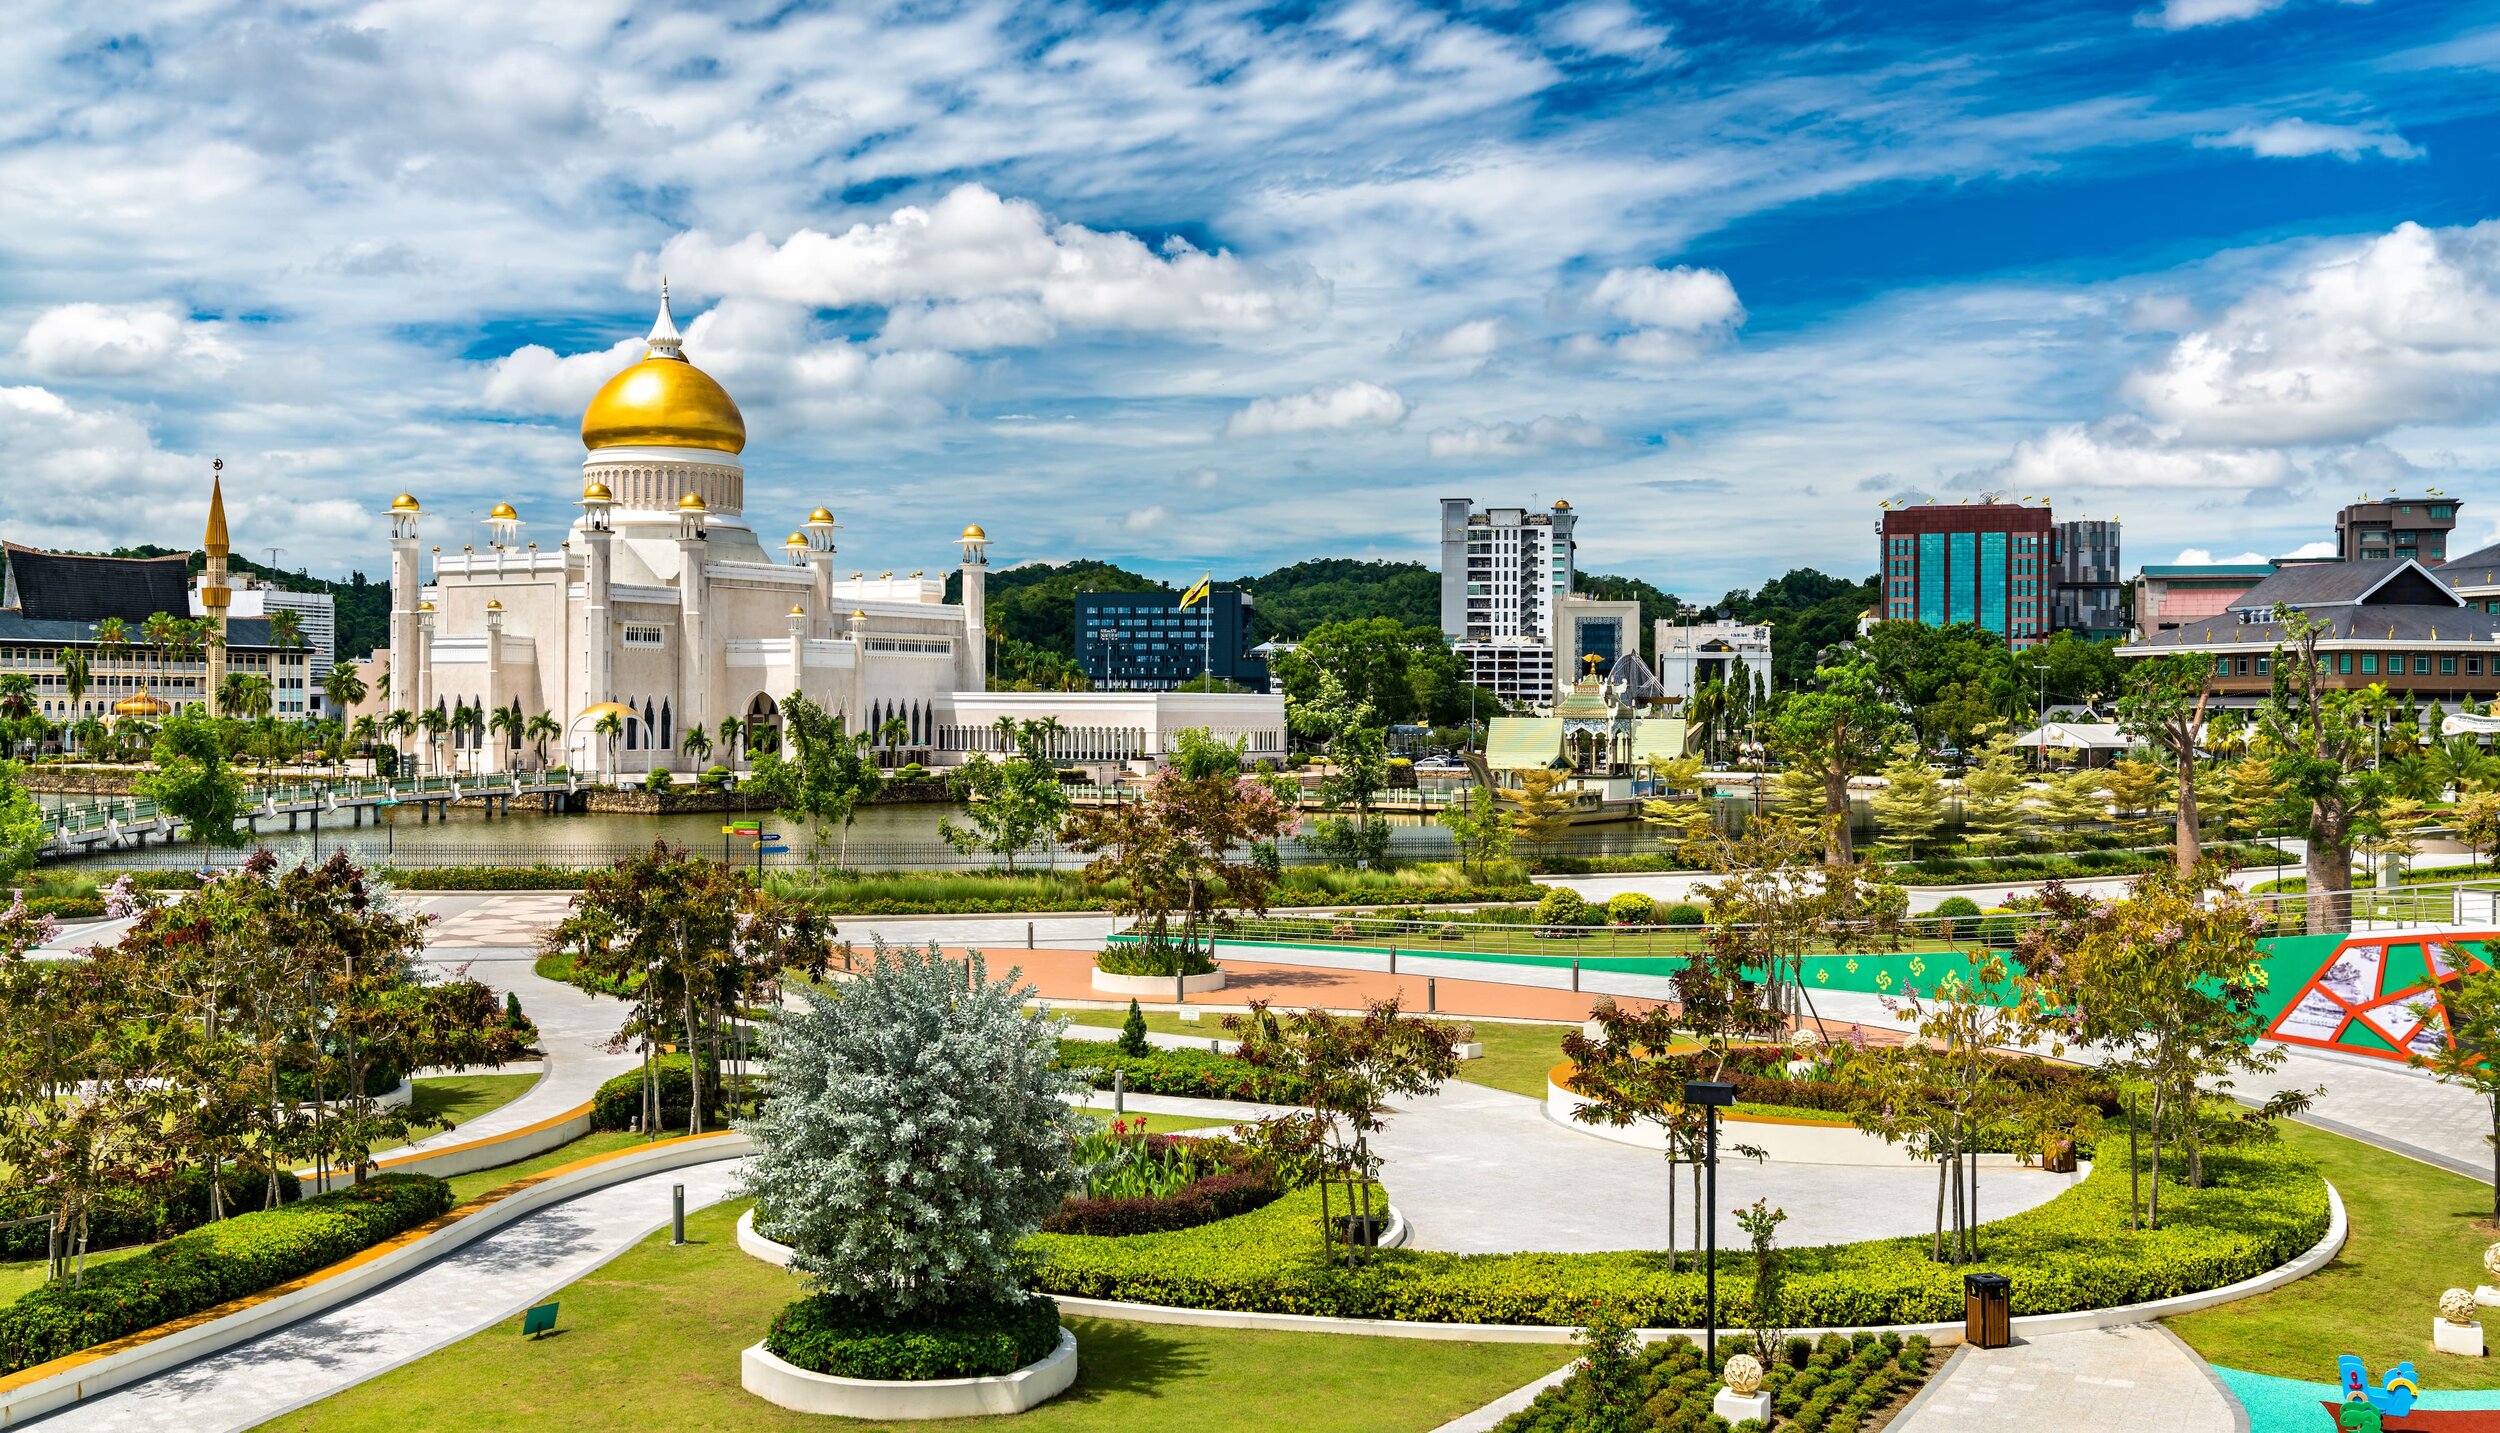 Bandar Seri Begawan - Brunei Capital